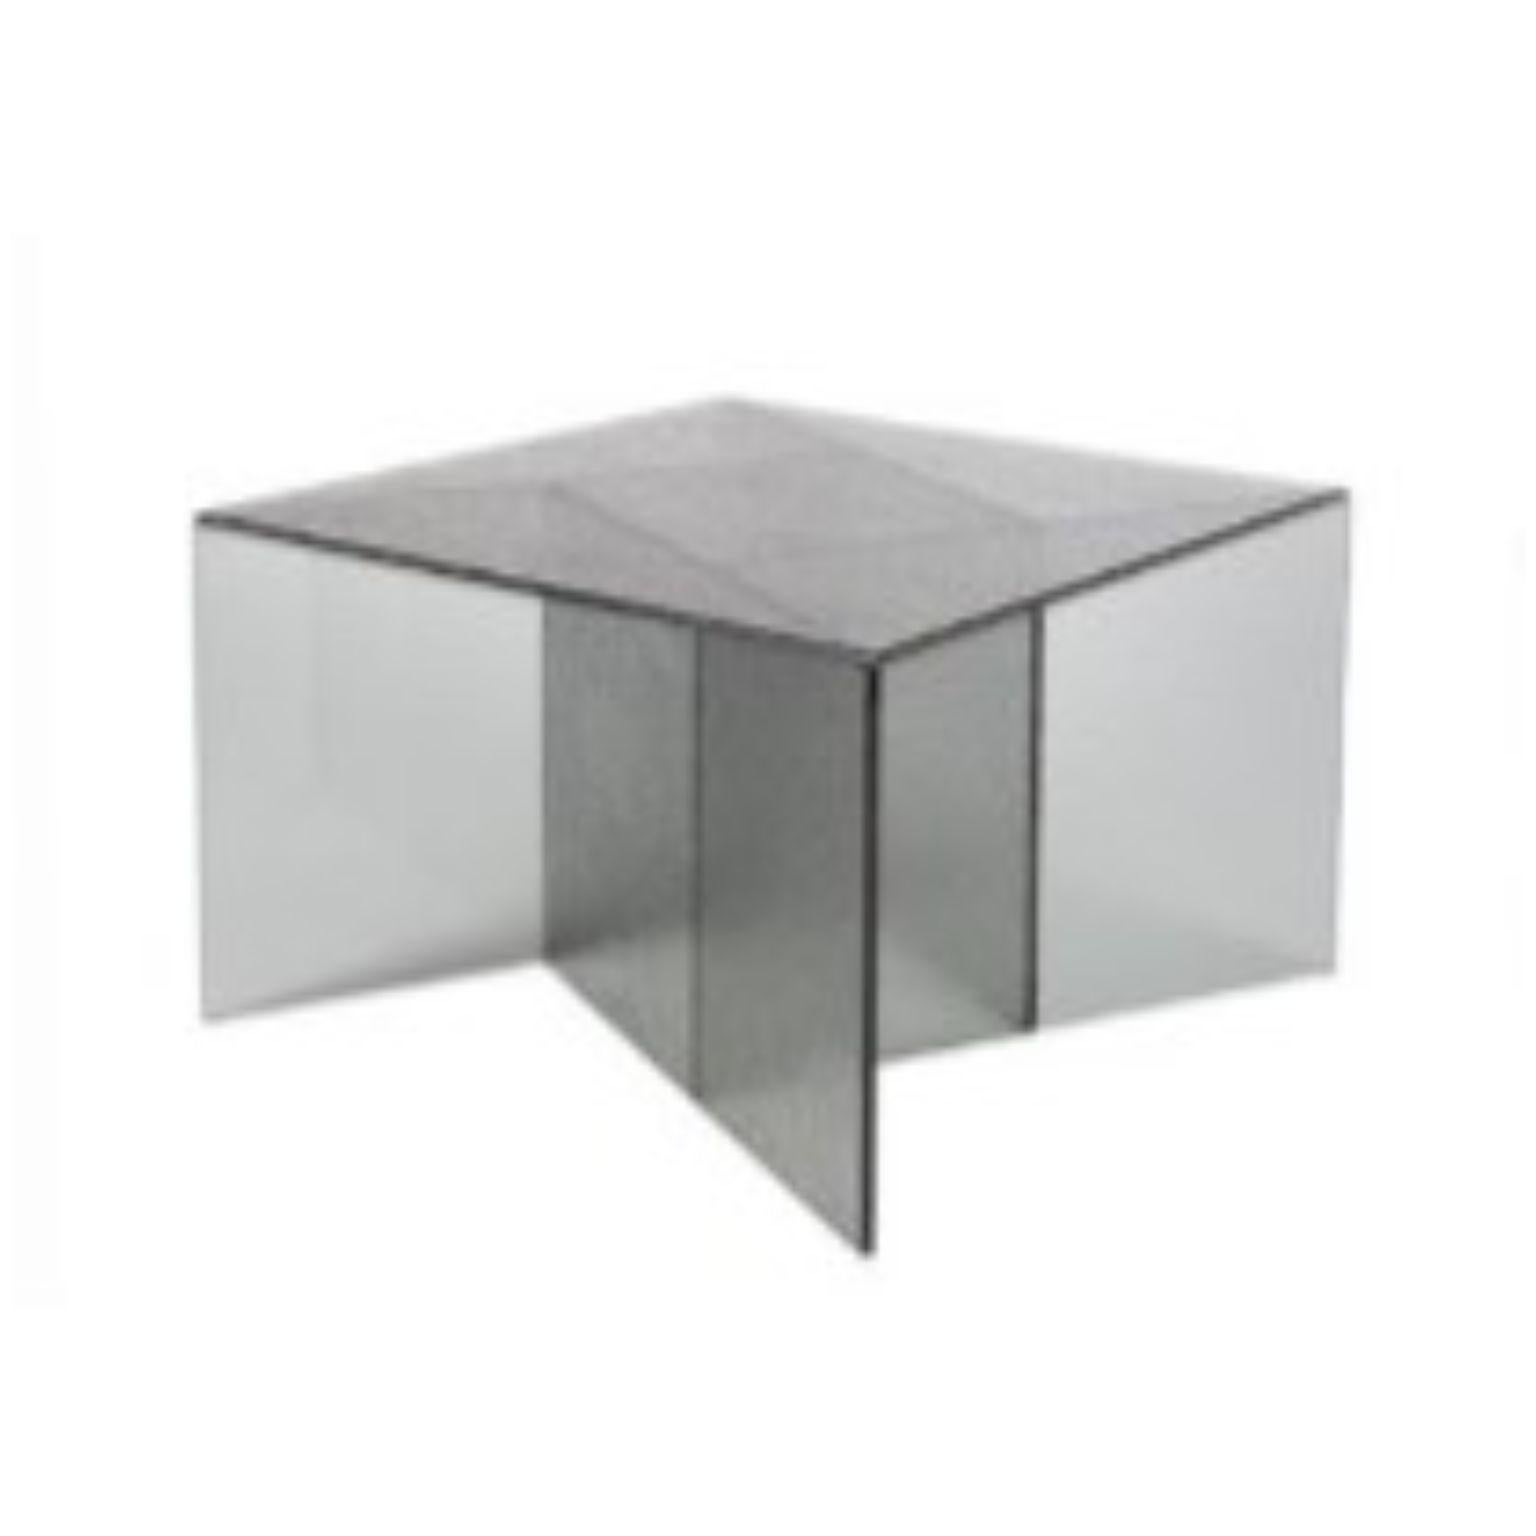 Table basse Aspa gris moyen par Pulpo
Dimensions : D60 x L60 x H40 cm
Matériaux : verre

Disponible également en différentes couleurs. 

La variété est un plaisir. Aspa, le concept de table d'appoint du studio de design espagnol MUT, est une